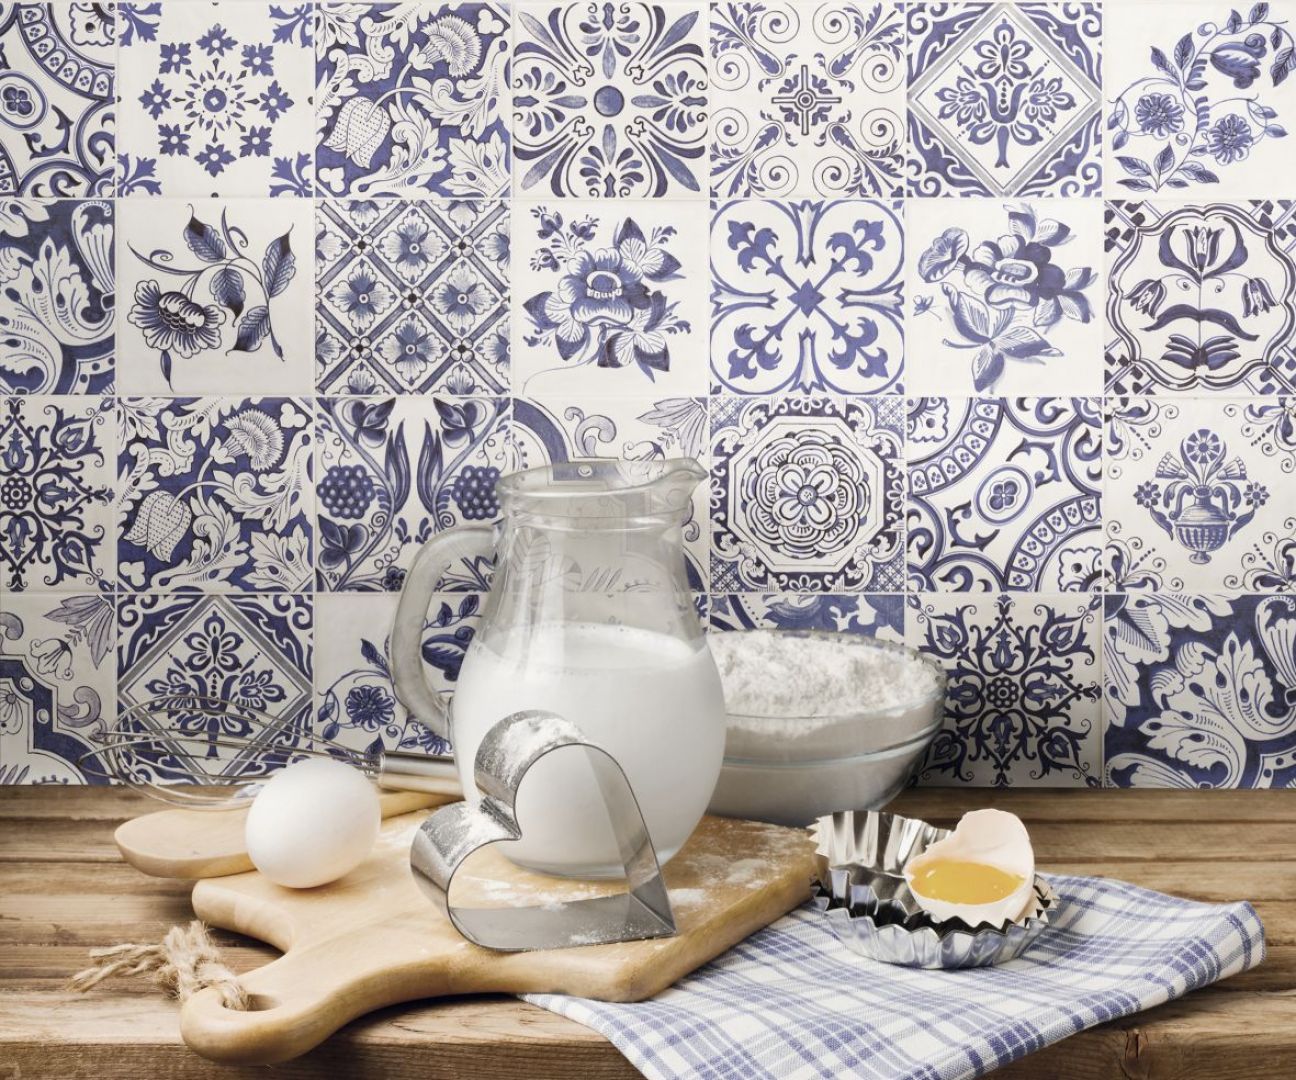 Płytki dekoracyjne z kolekcji Oporto marki Fabresa z kwiatowymi motywami w pięknej biało- niebieskiej tonacji. Fot. Fabresa.